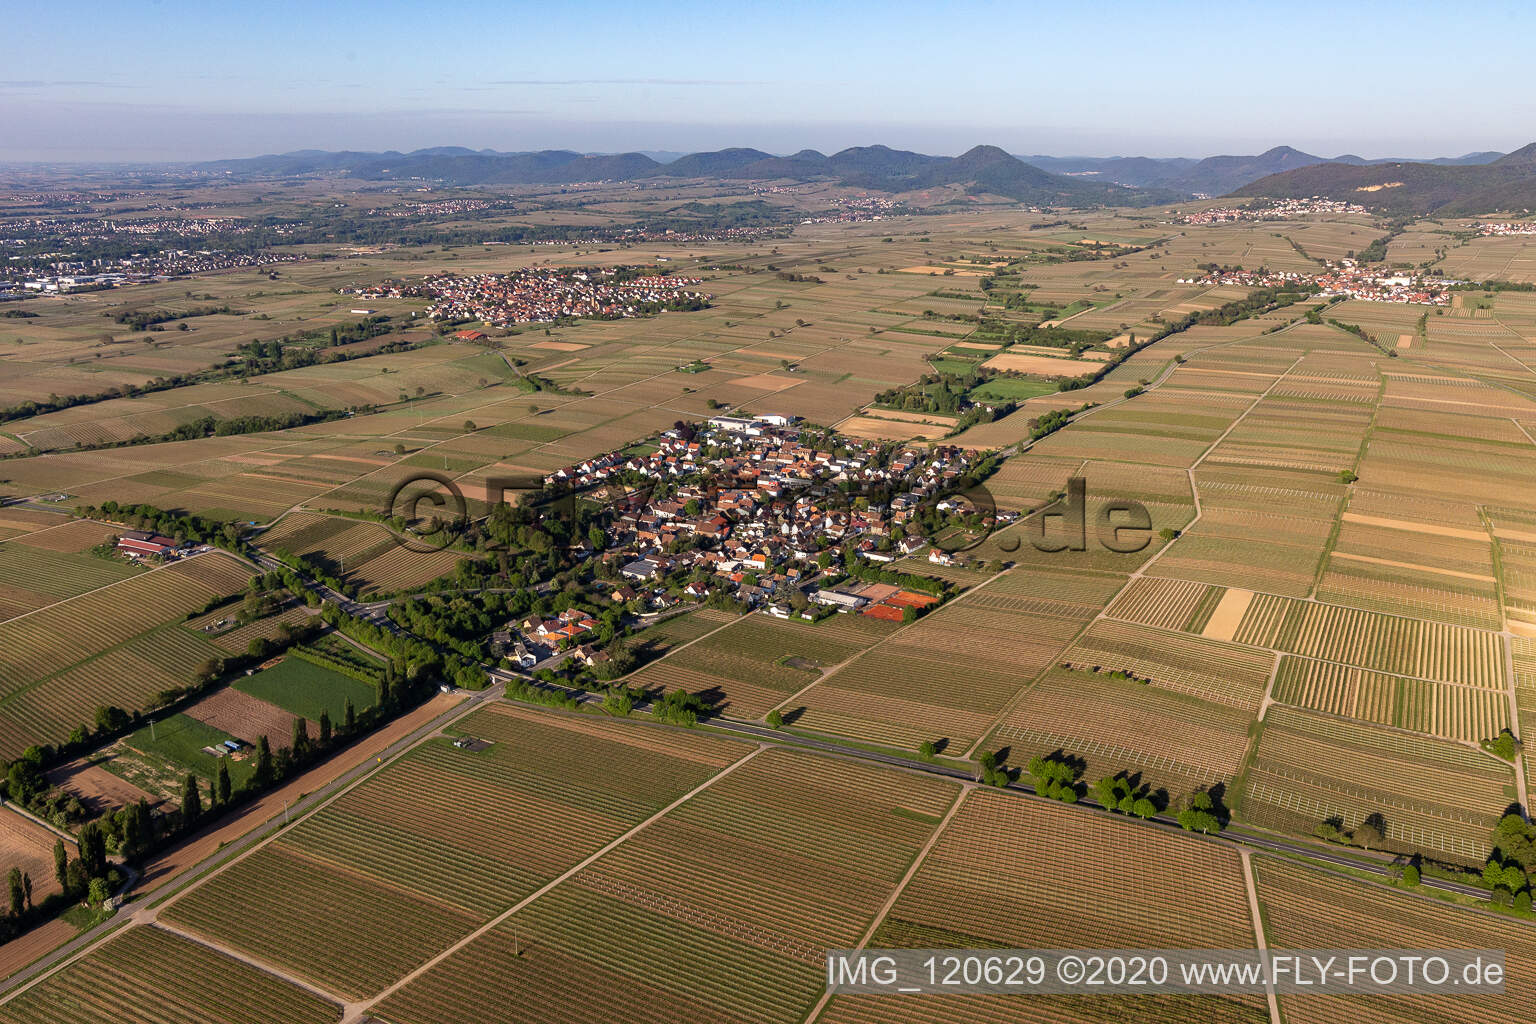 Walsheim im Bundesland Rheinland-Pfalz, Deutschland von der Drohne aus gesehen